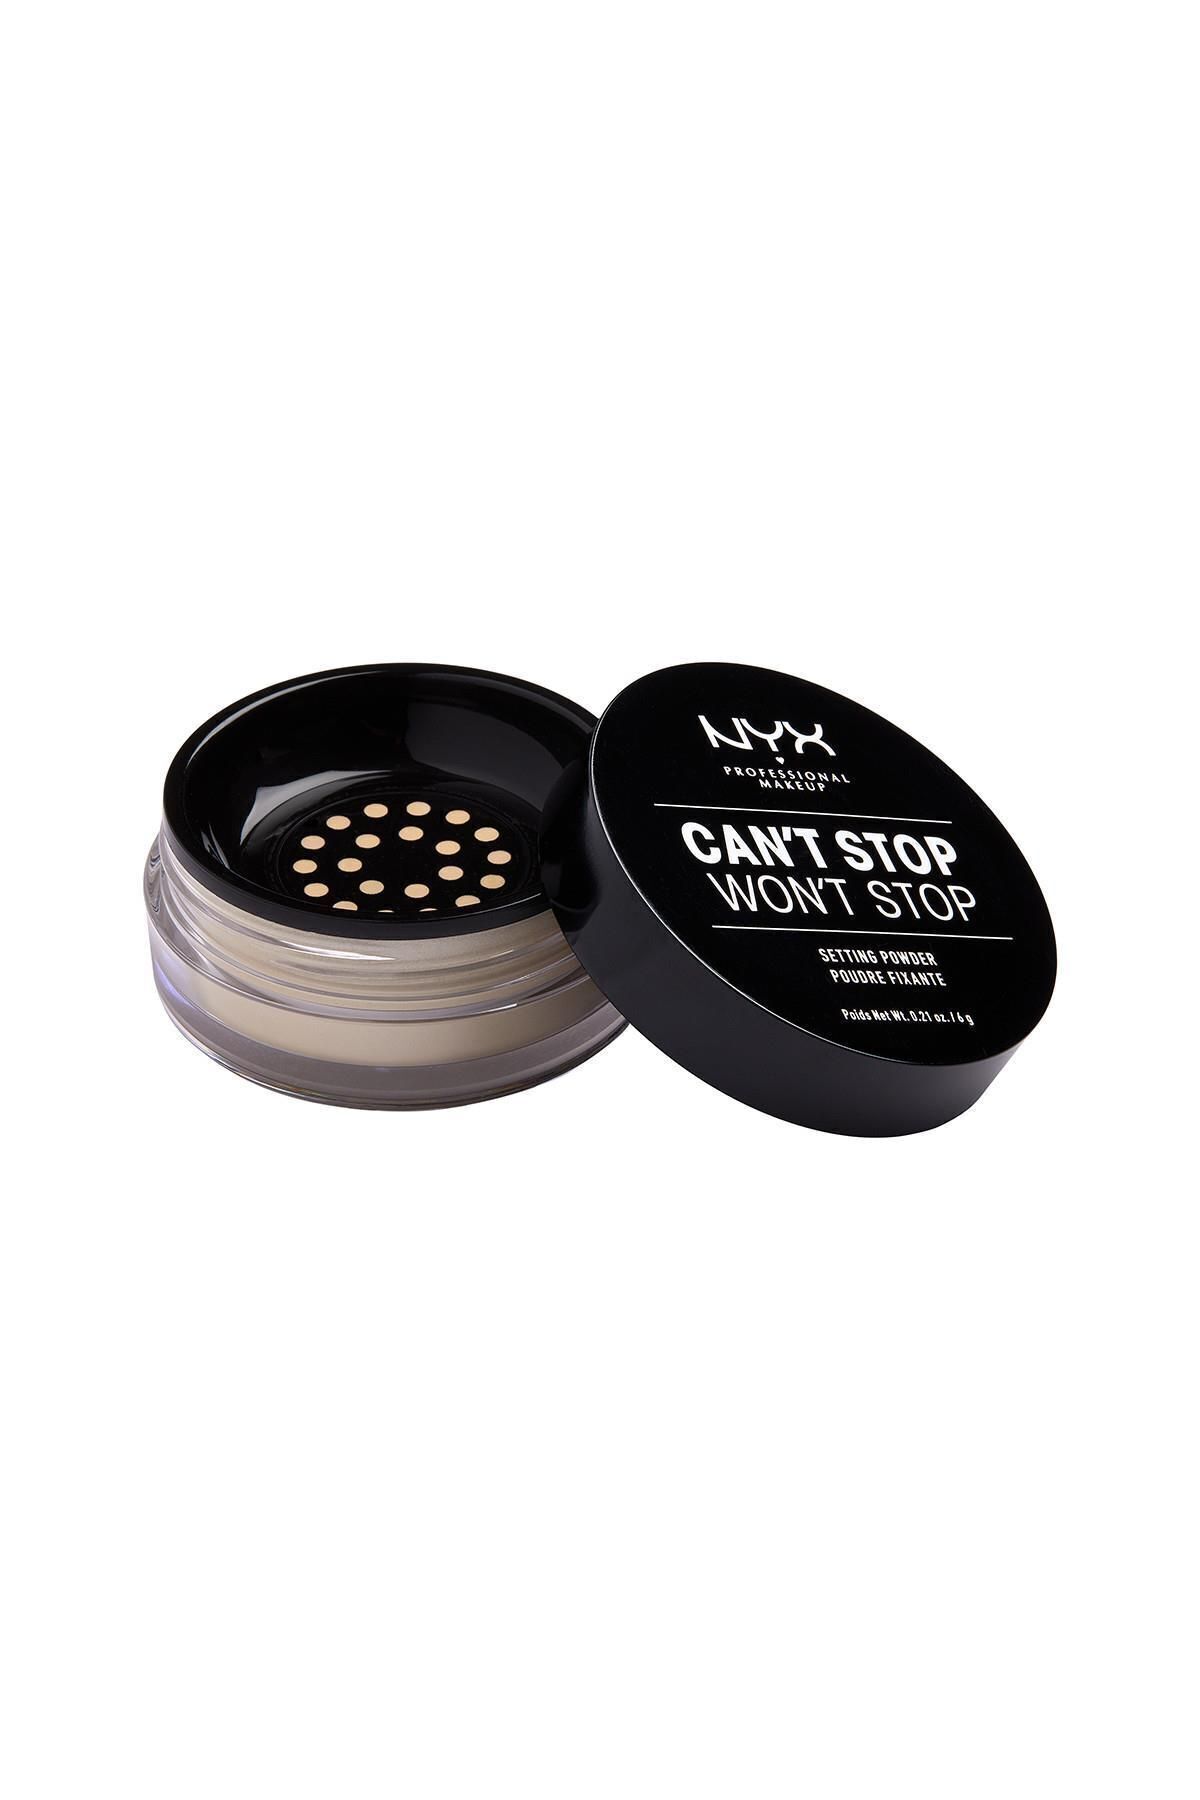 NYX Professional Makeup Sabitleyici Pudra - Can't Stop Won't Stop Setting Powder Light Medium 800897183707